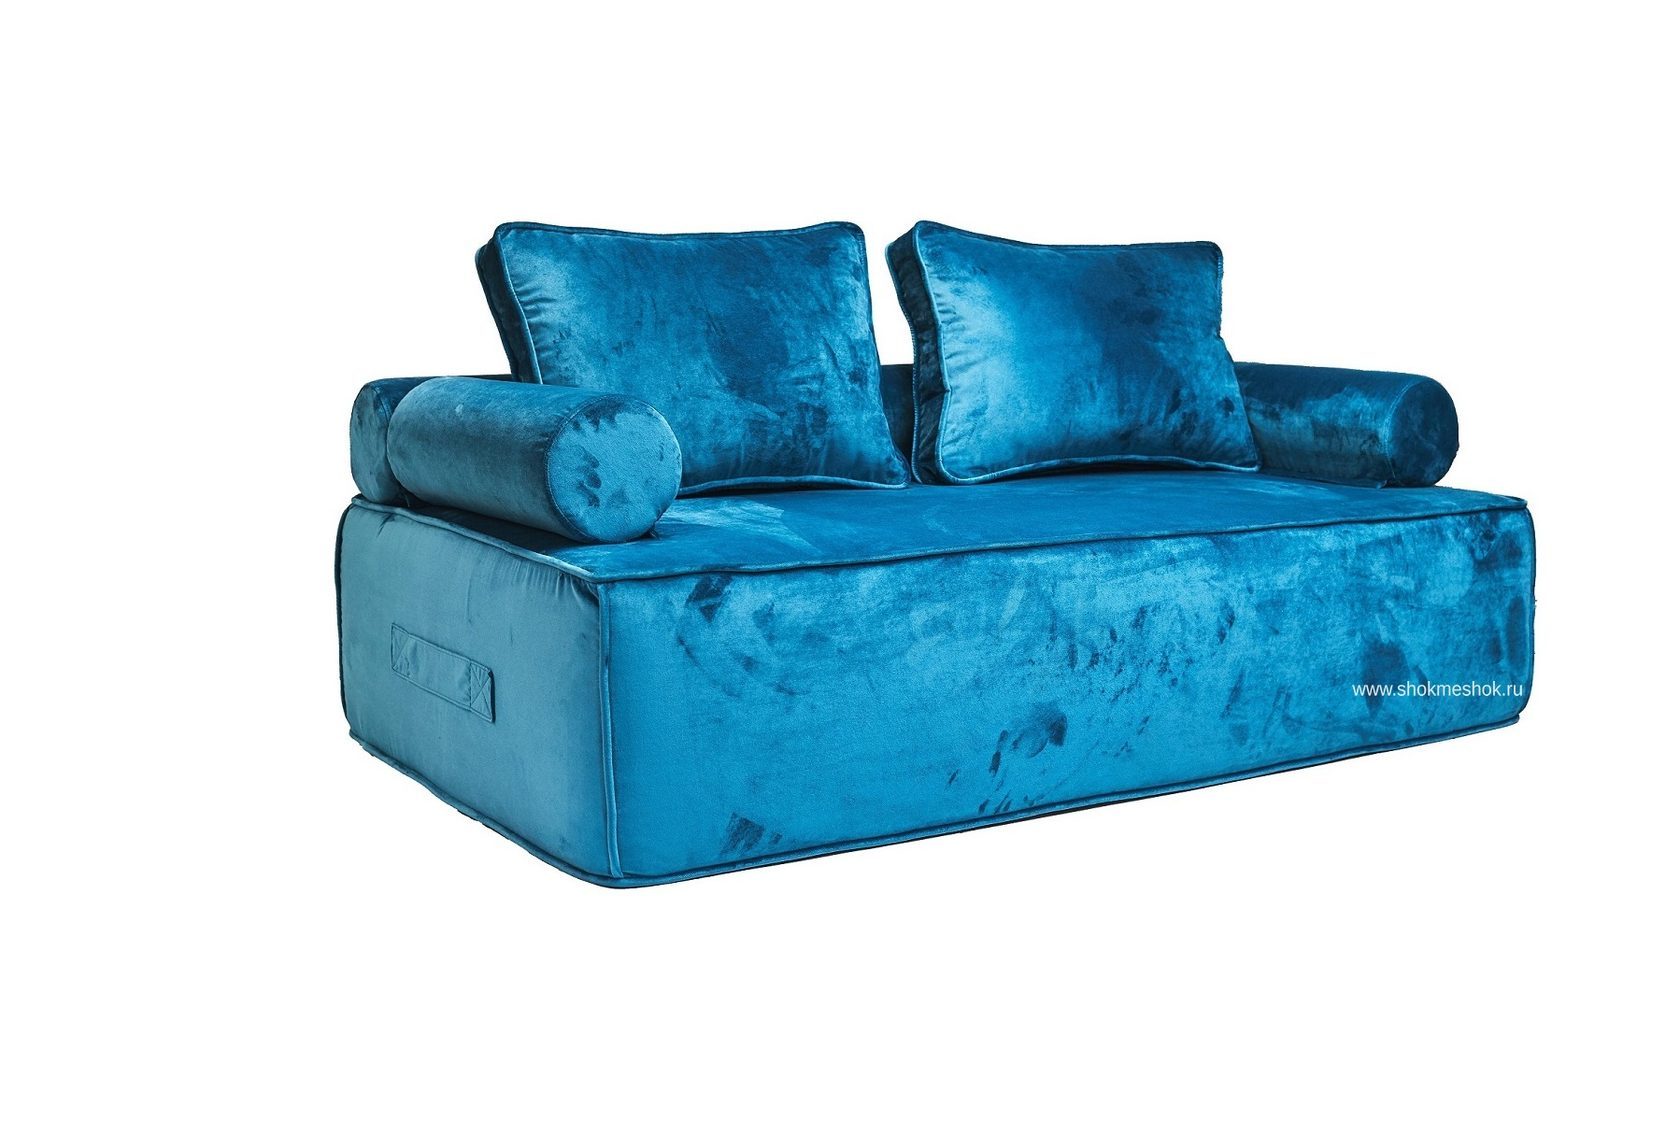 Купить прямой бескаркасный двухместный диван ДеФранс (Француз) | Фабрика 